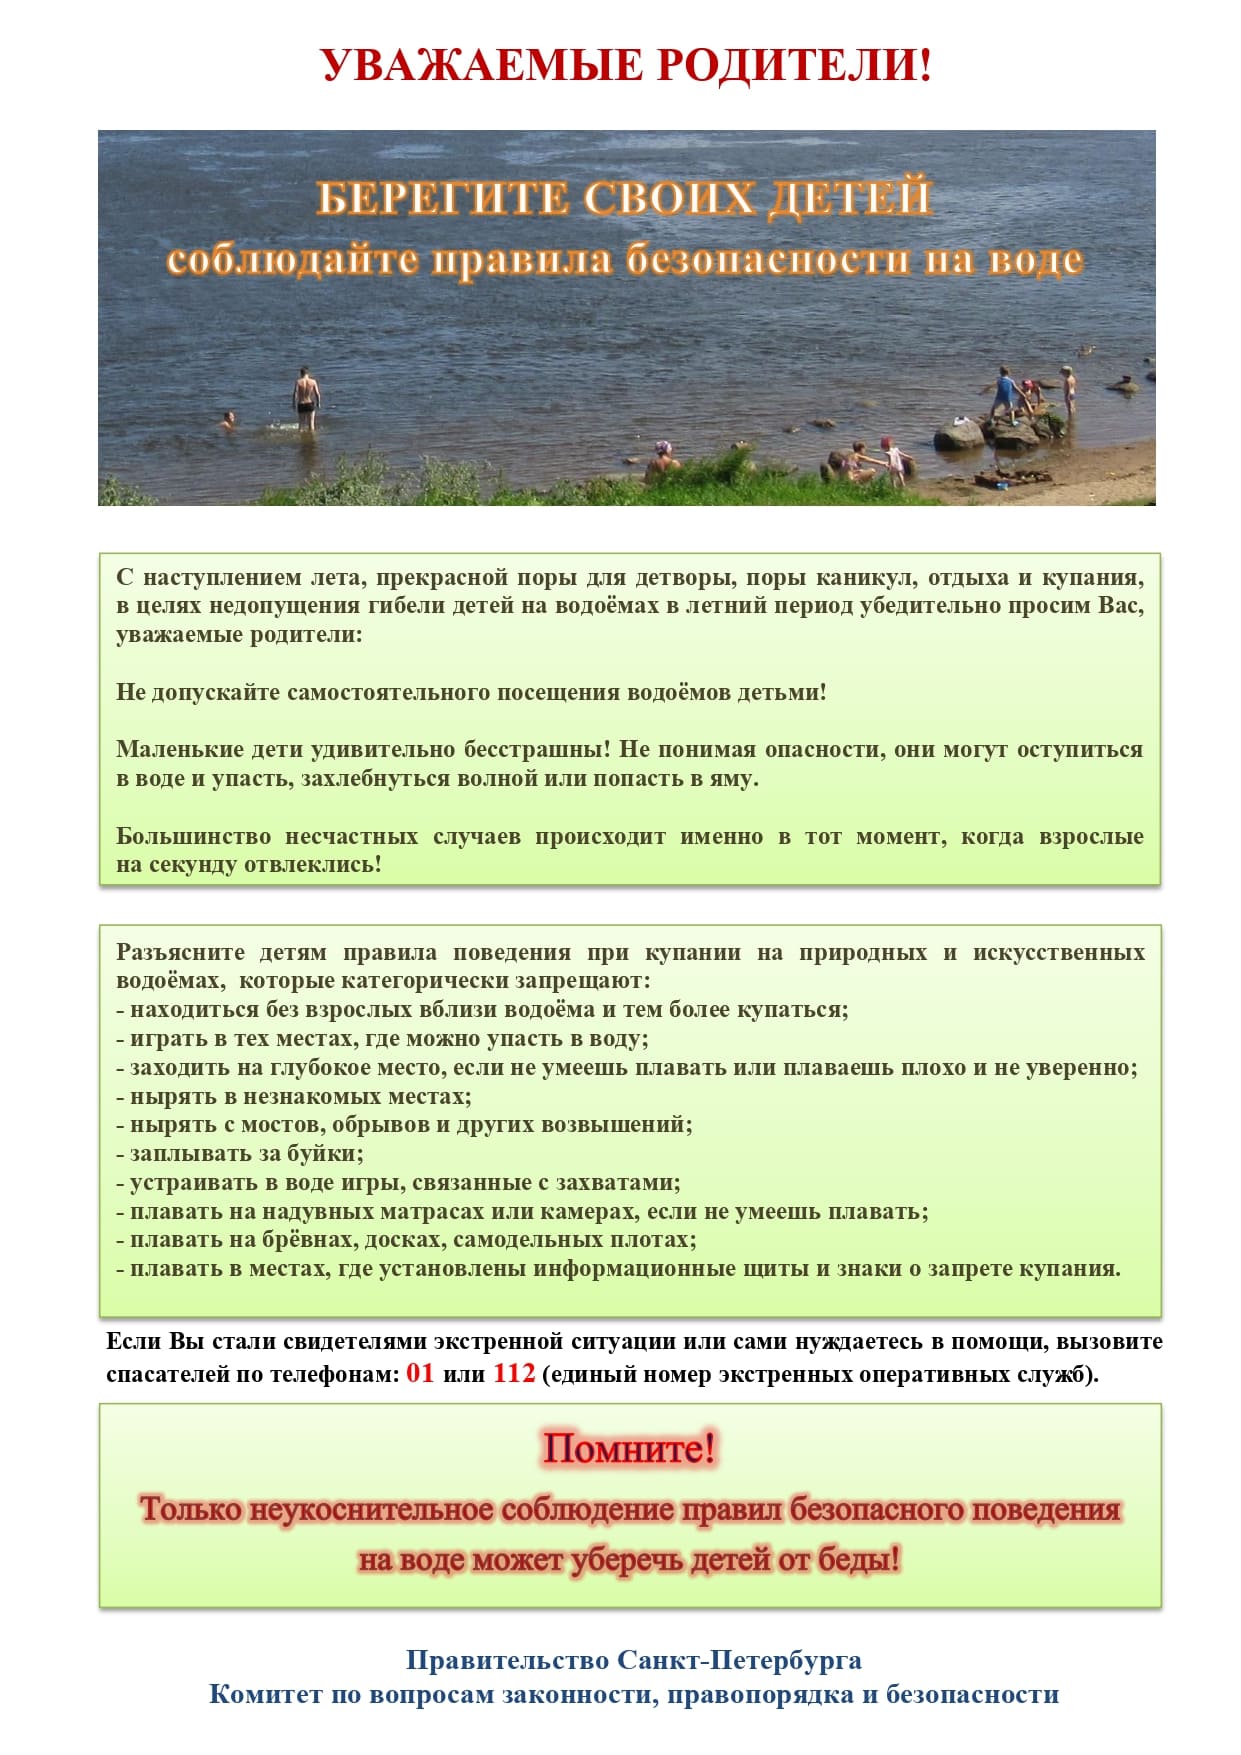 Памятка родителям по запрету купания в неотведённых местах 2021 1 page 0001